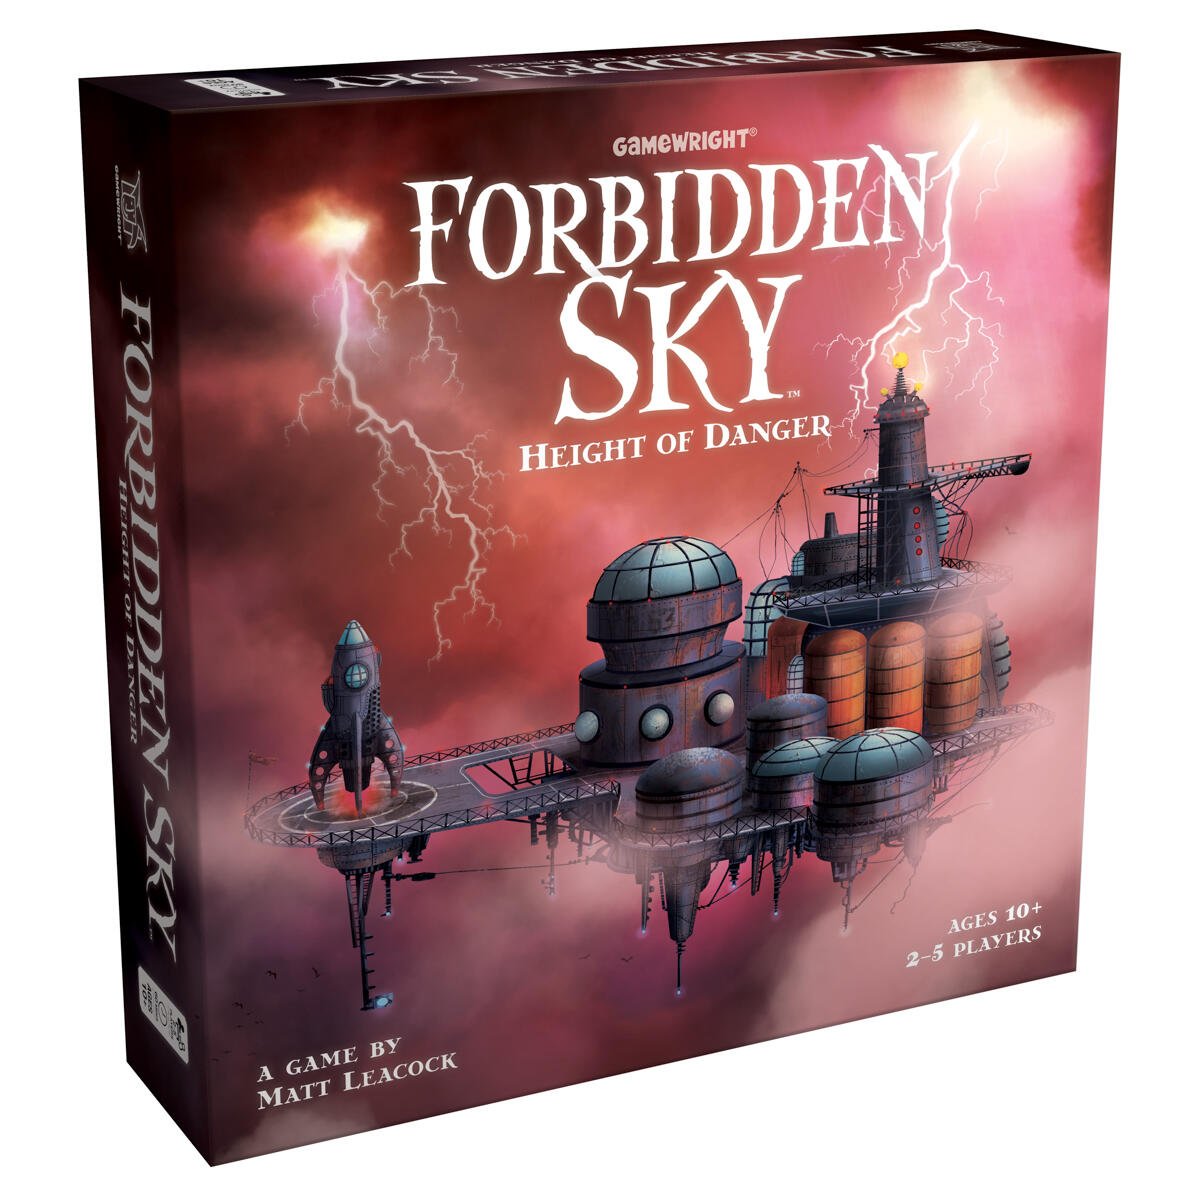 forbidden game book